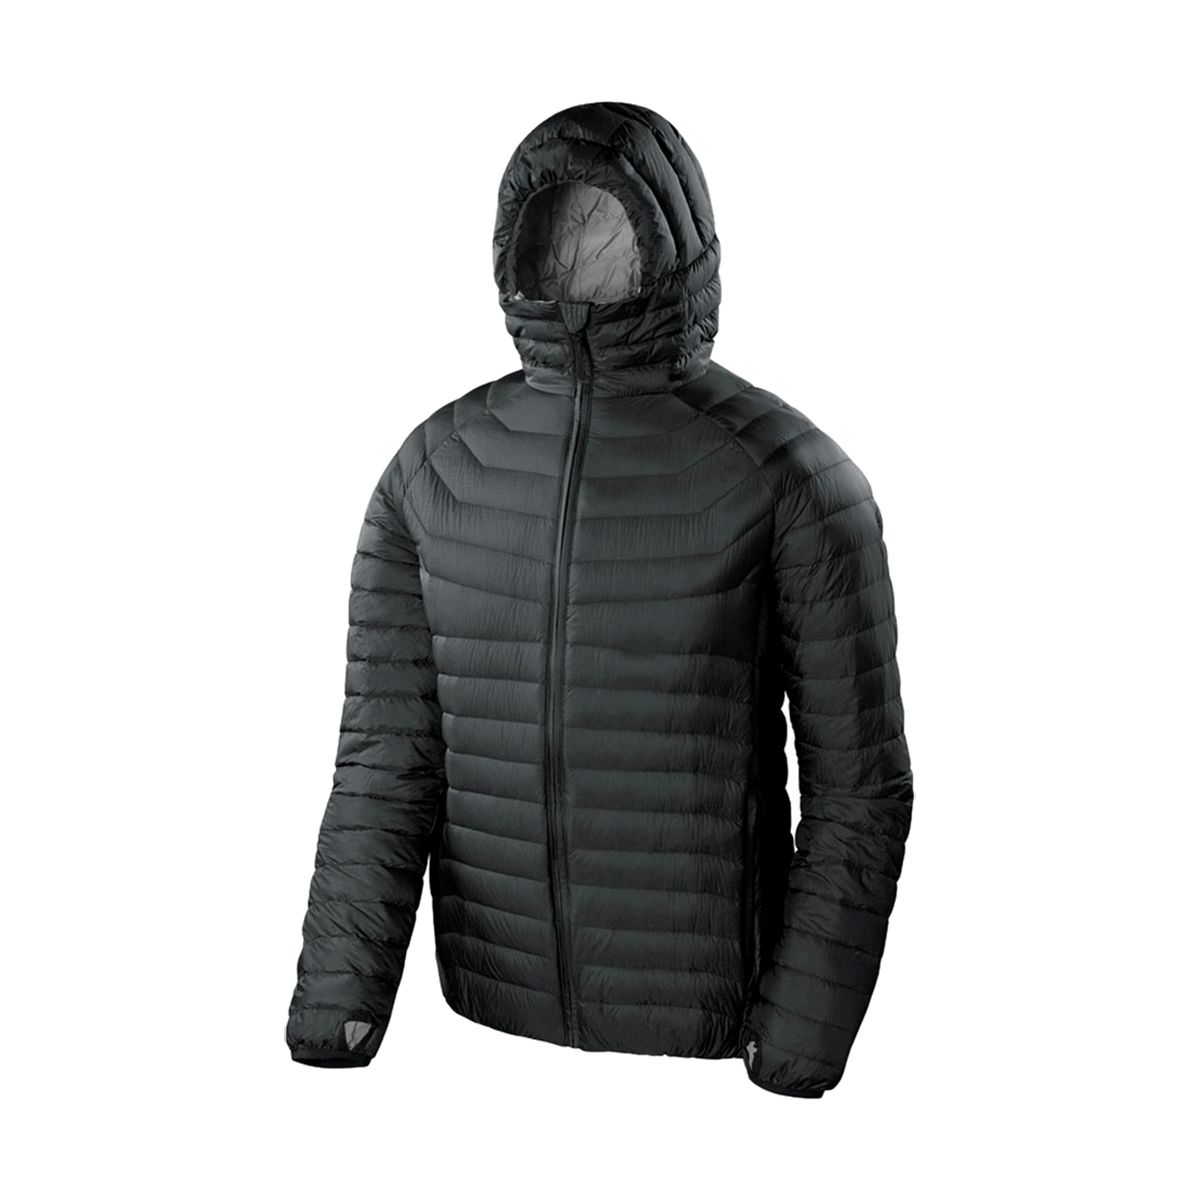 Sierra Designs Elite DriDown Hooded Jacket - Men's - Clothing